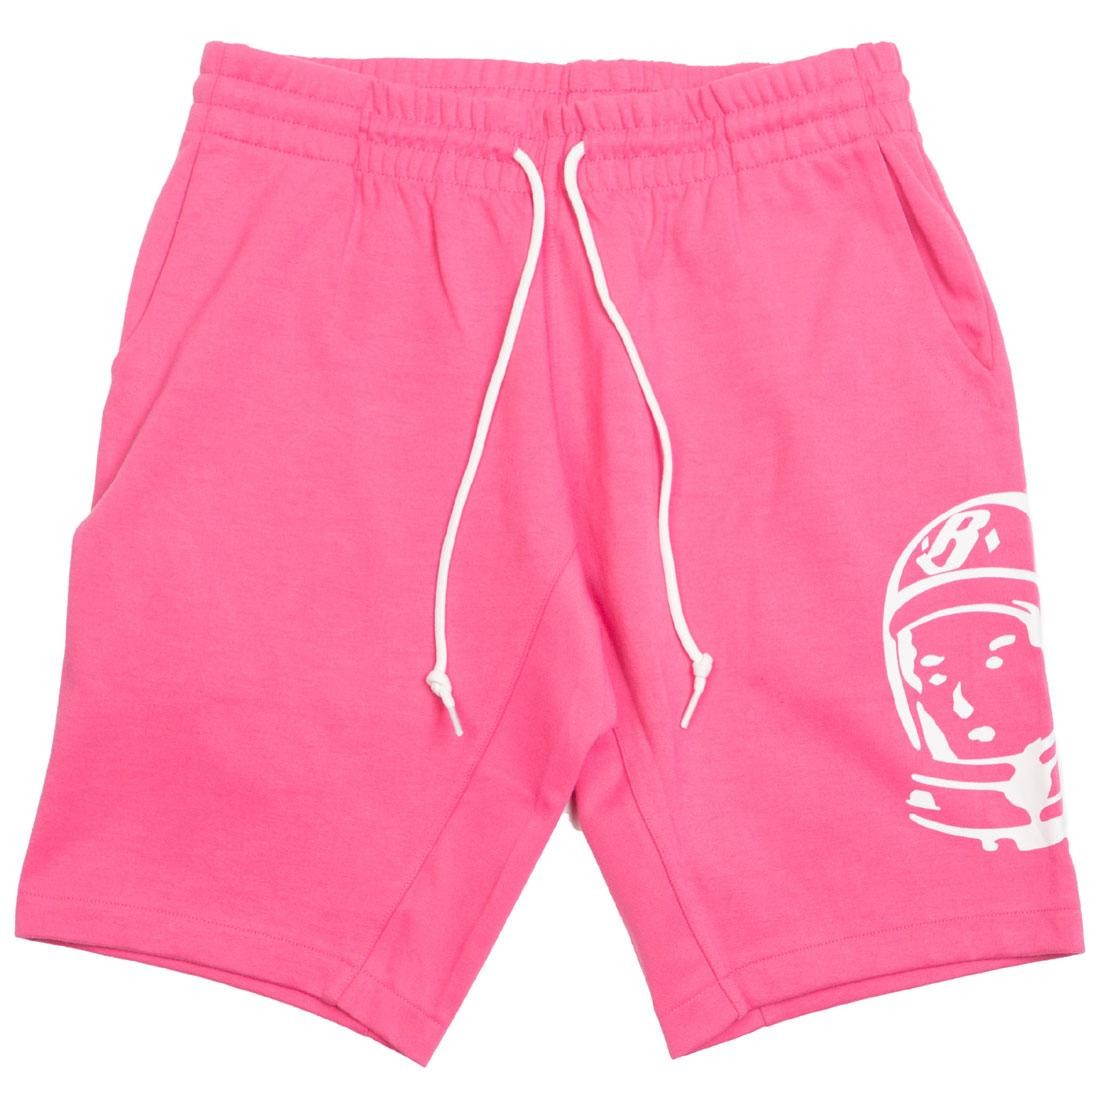 pink shorts boys